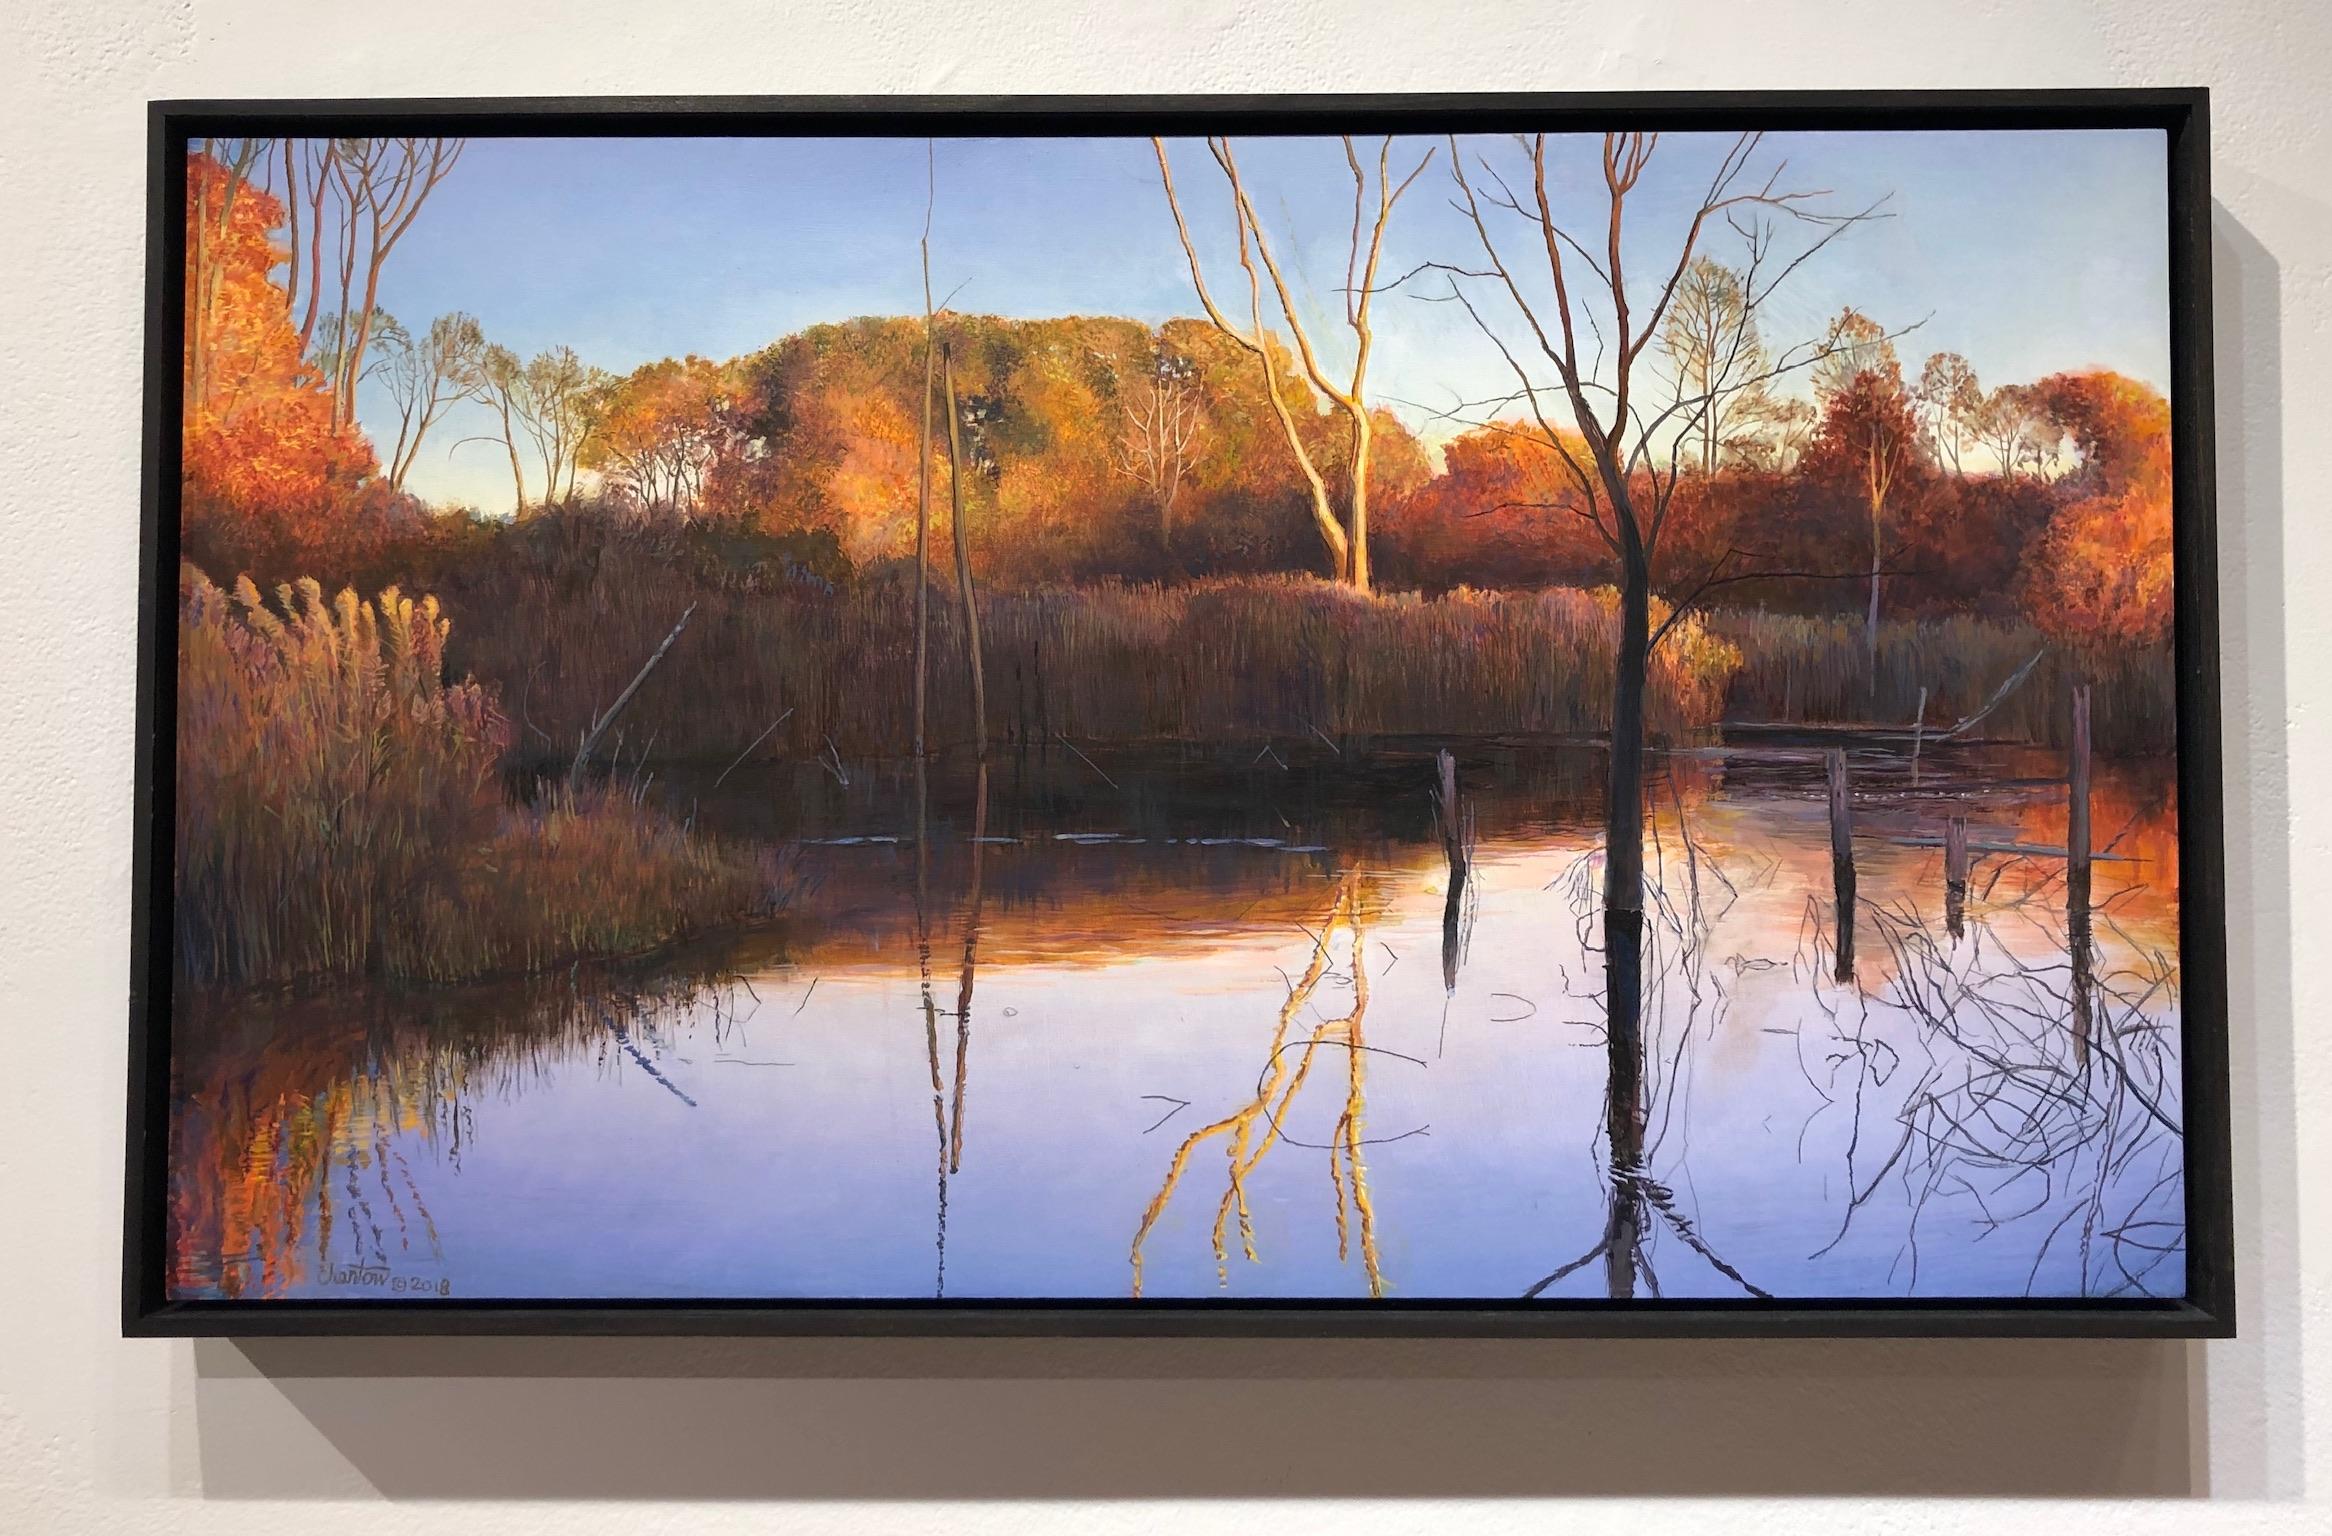 Day's End at Haggerty's Pond - Wald in Sonnenlicht reflektiert im Wasser  – Painting von Art Chartow